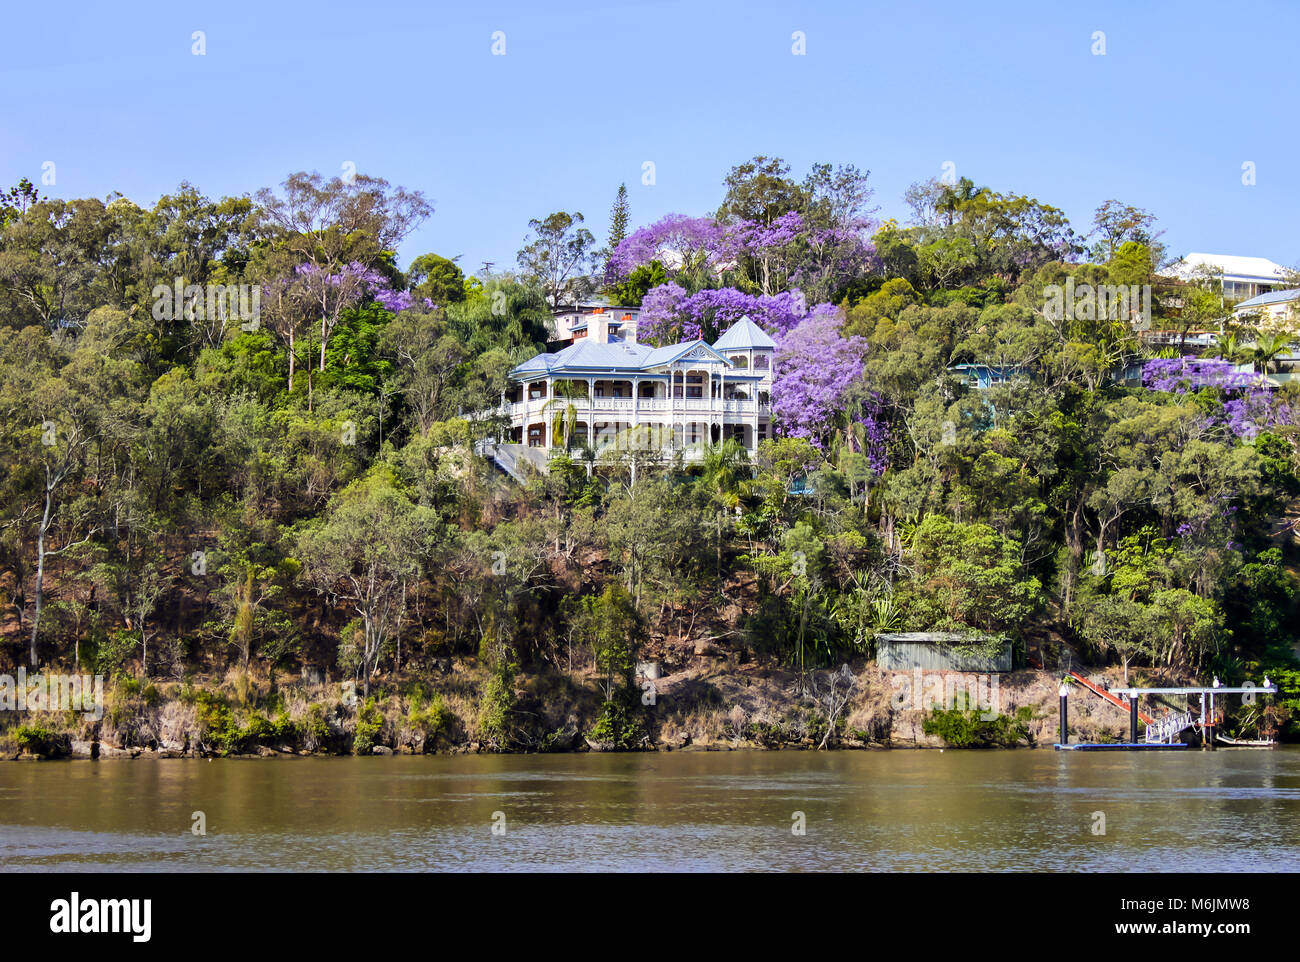 Traditionelle Queenslander House am Ufer des Flusses in Queensland Australien.jpg Stockfoto